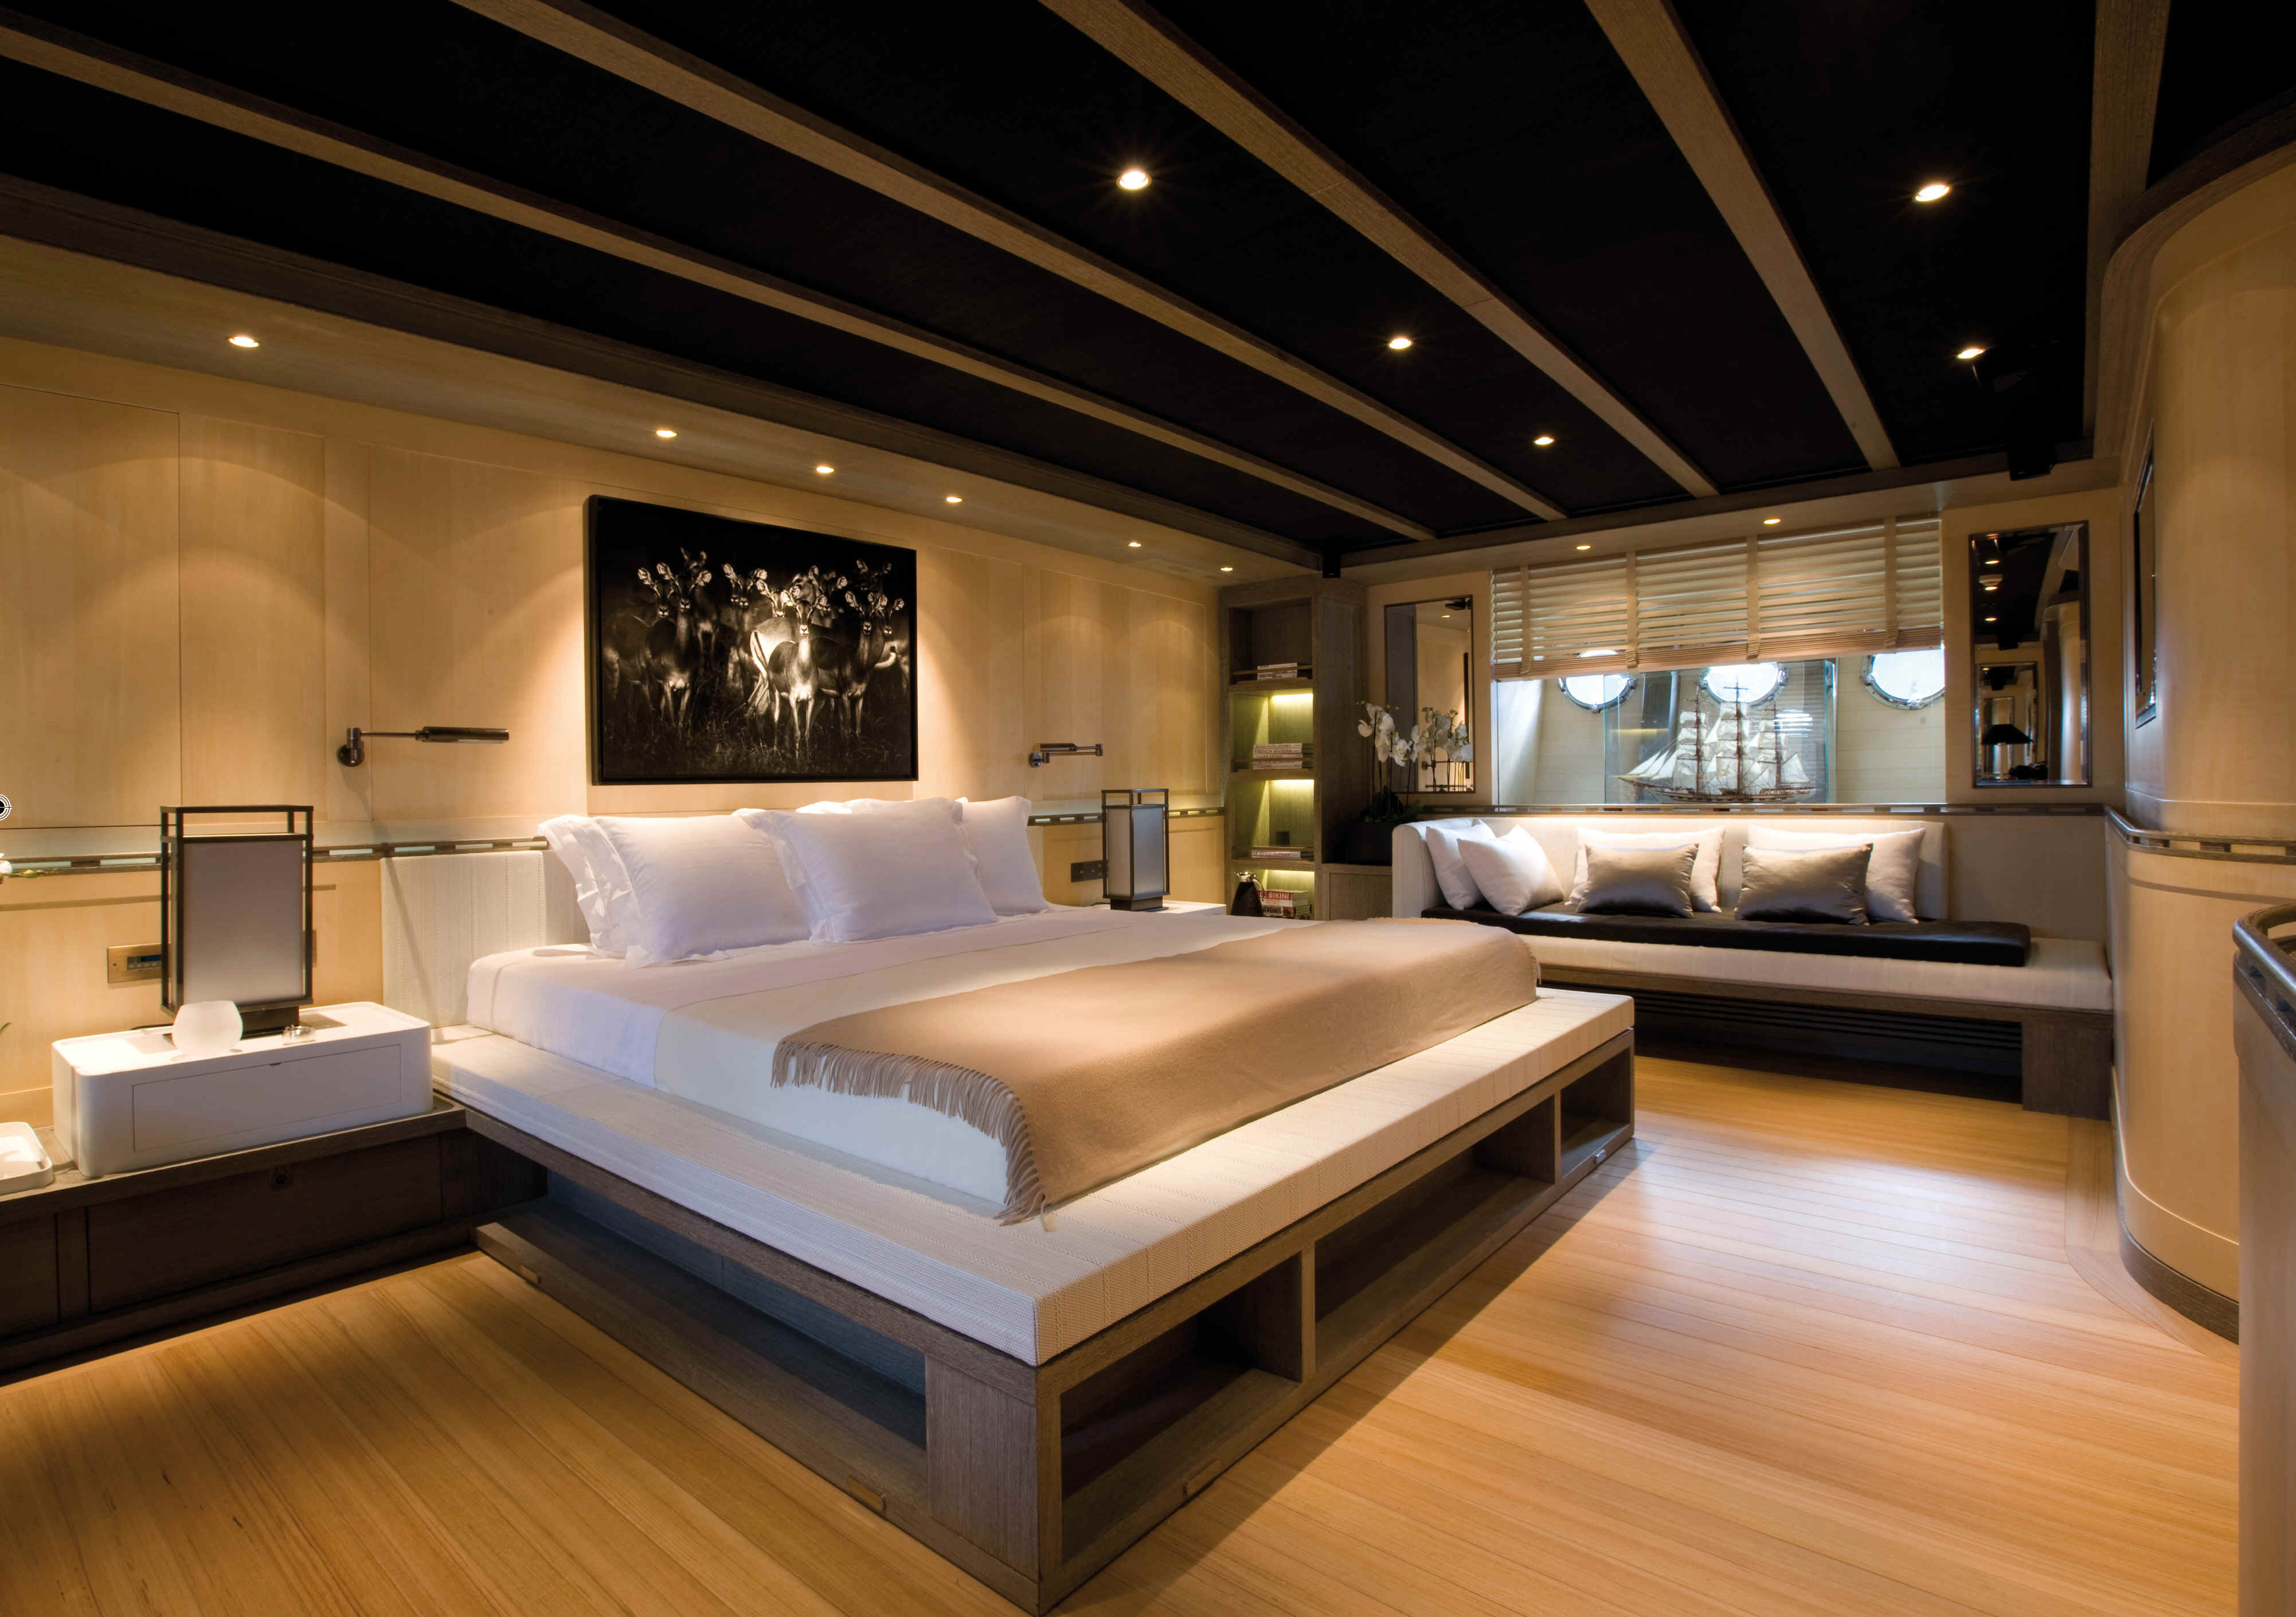 8 bedroom yacht